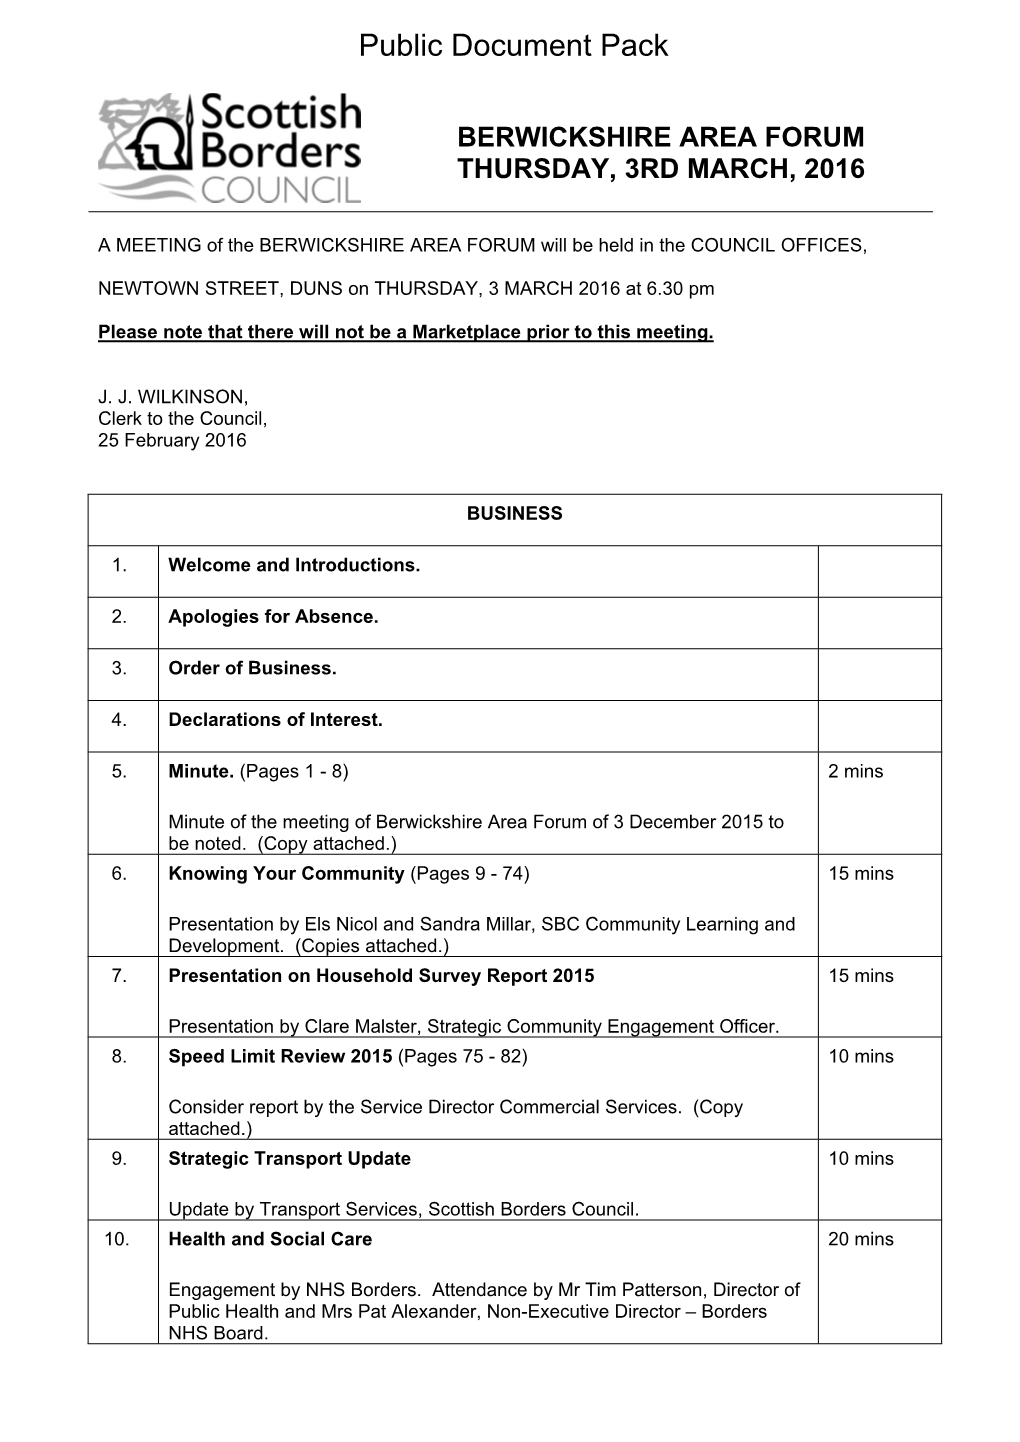 (Public Pack)Agenda Document for Berwickshire Area Forum, 03/03